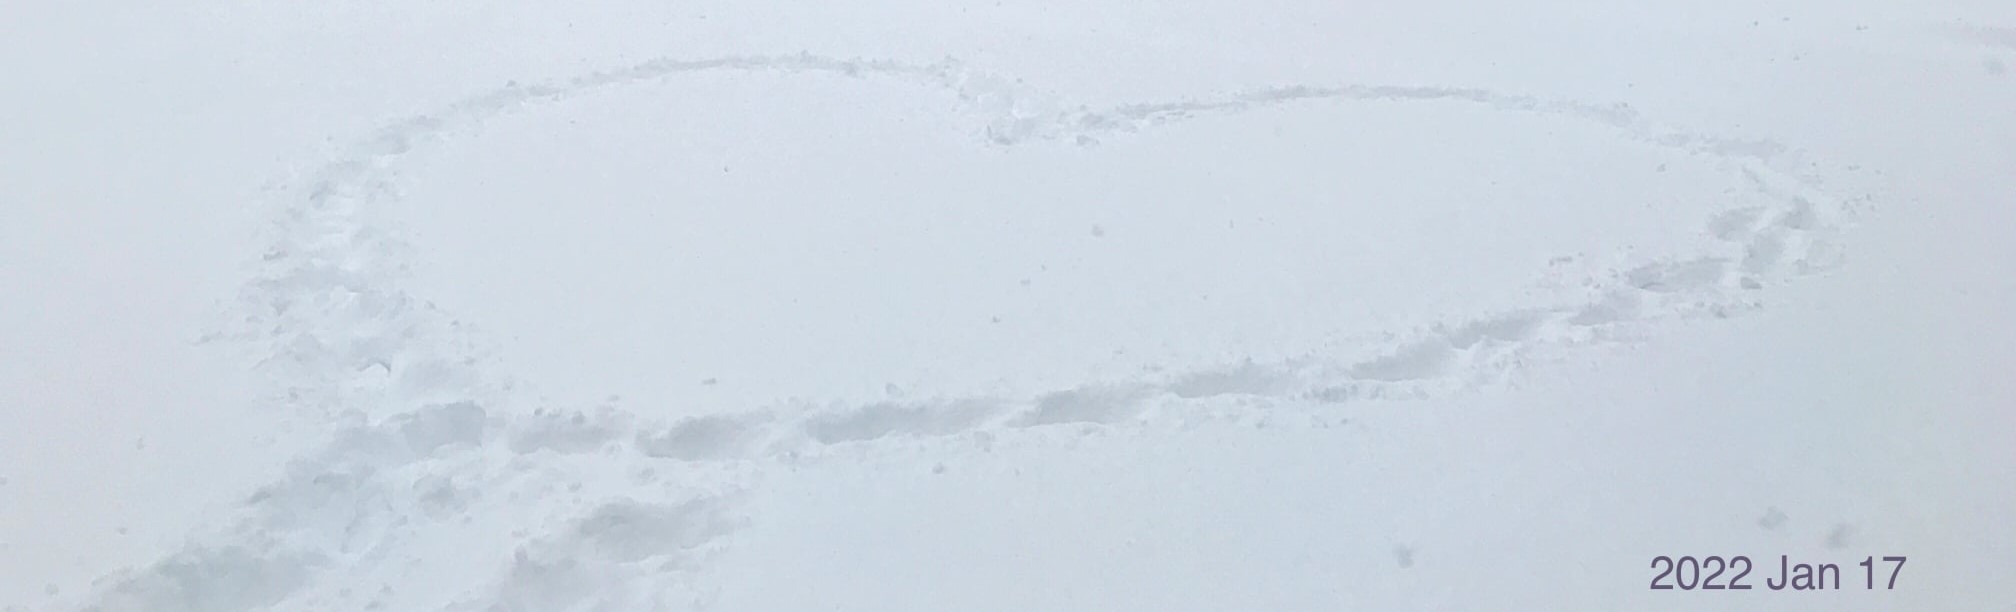 heart on snow